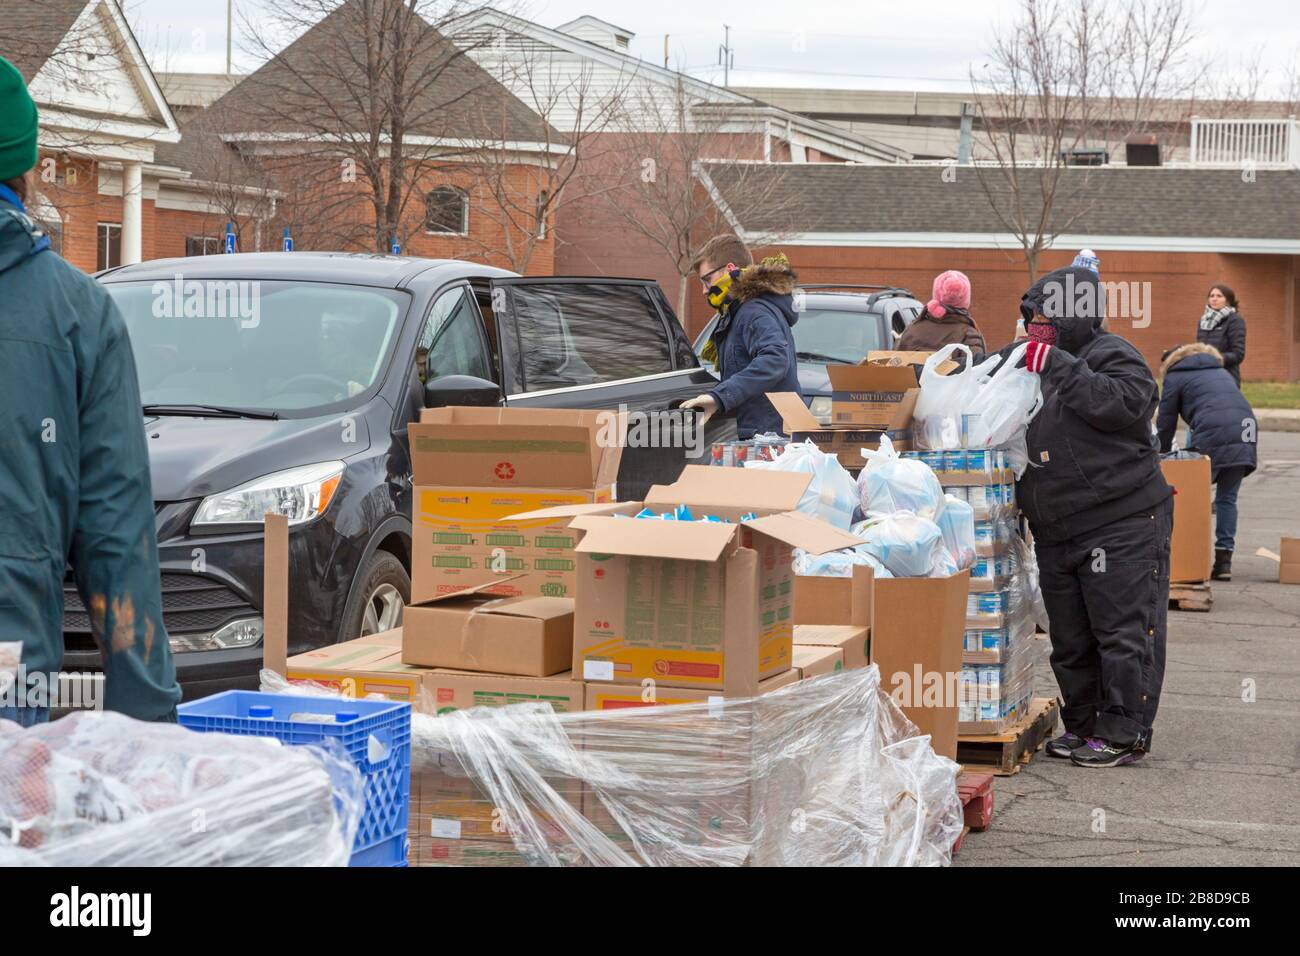 Detroit, Michigan, États-Unis. 21 mars 2020. Pendant la crise du coronavirus, la banque alimentaire communautaire Gleaners distribue des aliments gratuits aux résidents dans le besoin du sud-ouest de Detroit. Crédit: Jim West/Alay Live News Banque D'Images